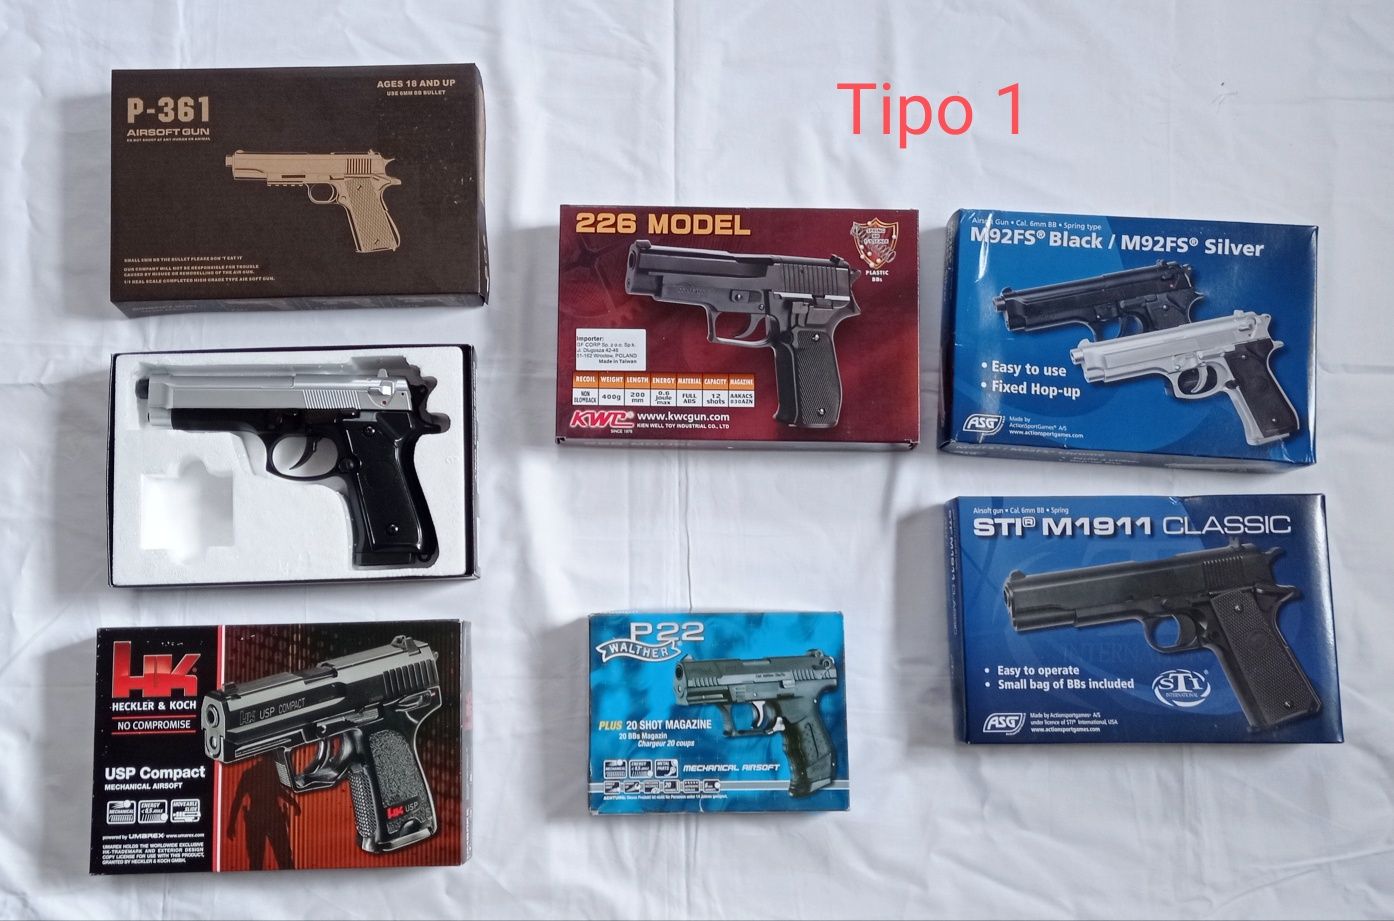 Shotgun e Pistola de MOLA e M4, Novo Airsoft Full Metal